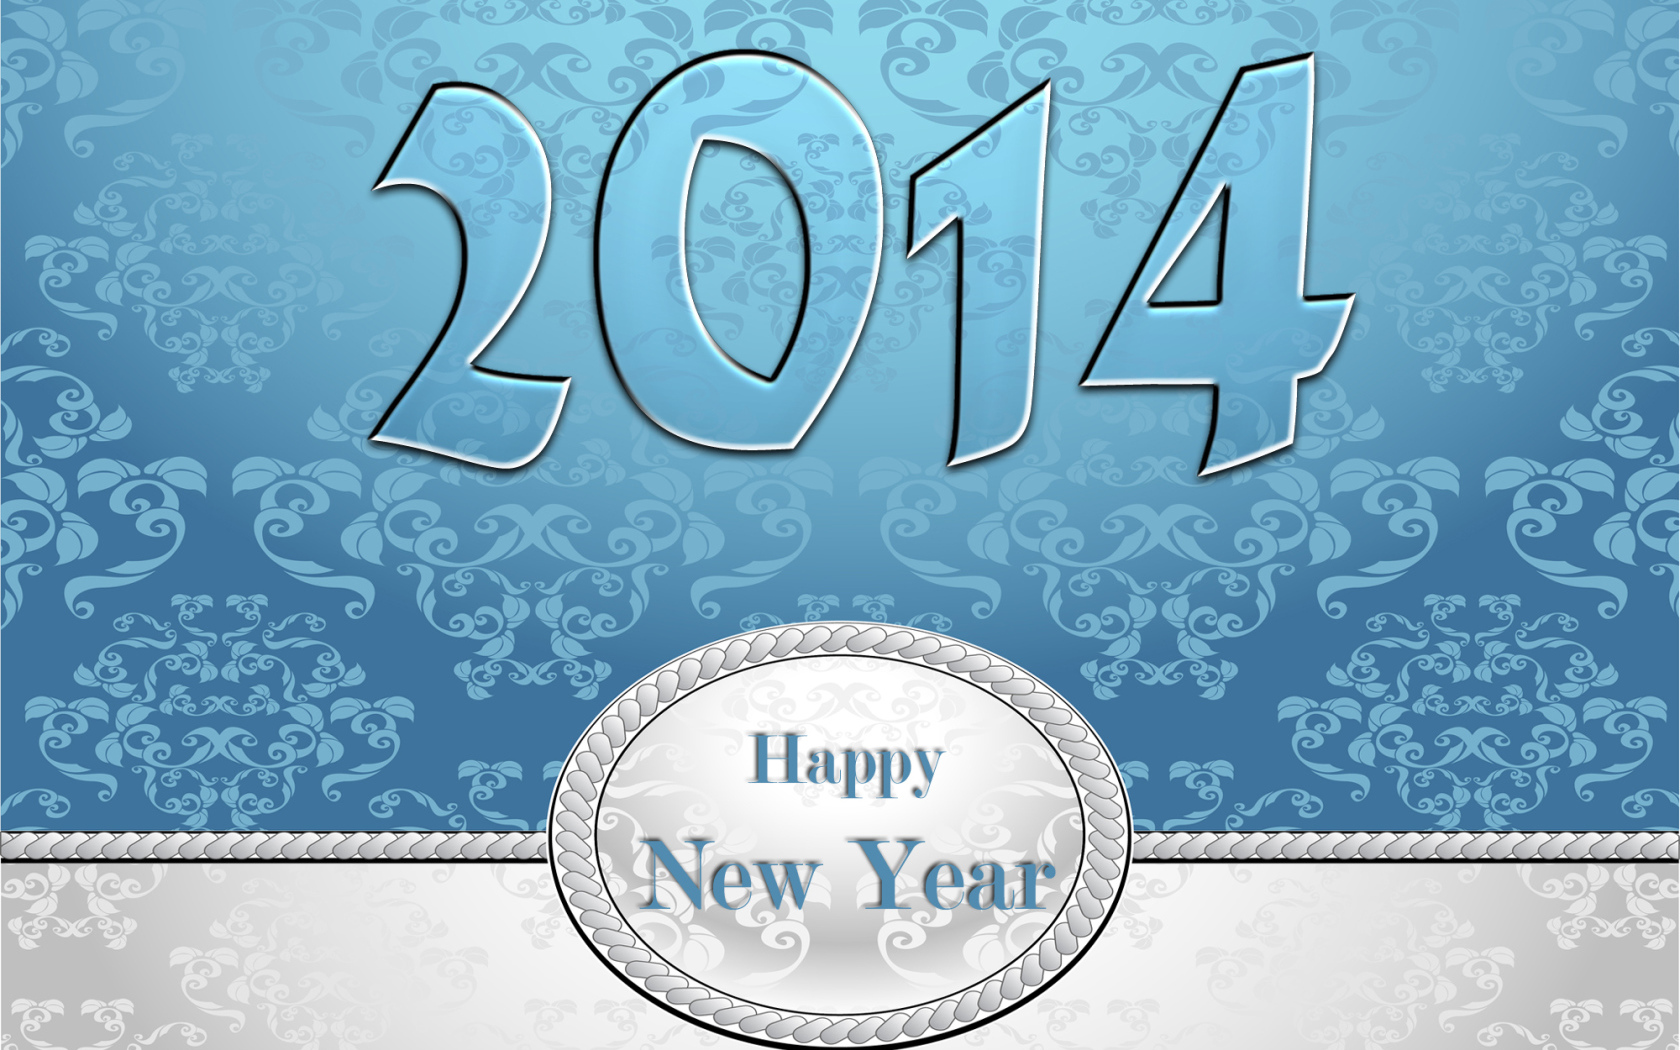 Счастливого нового года 2014, голубой и белый цвет